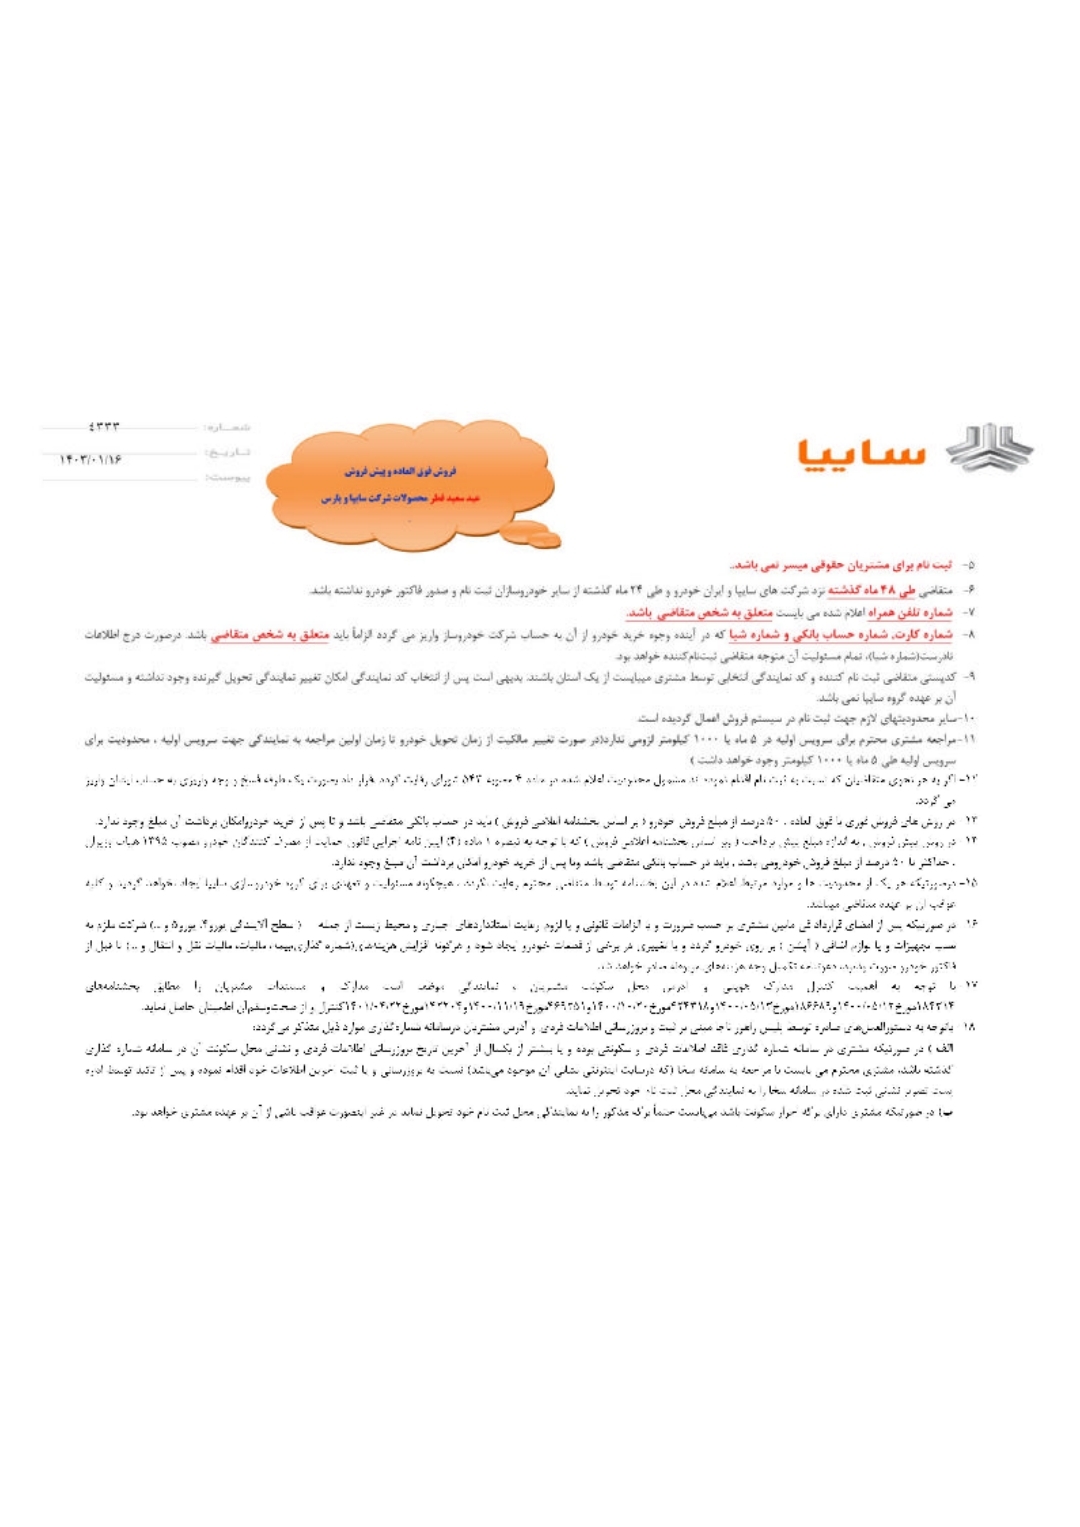 جزئیات فروش فوق العاده سایپا ویژه عید سعید فطر اعلام شد